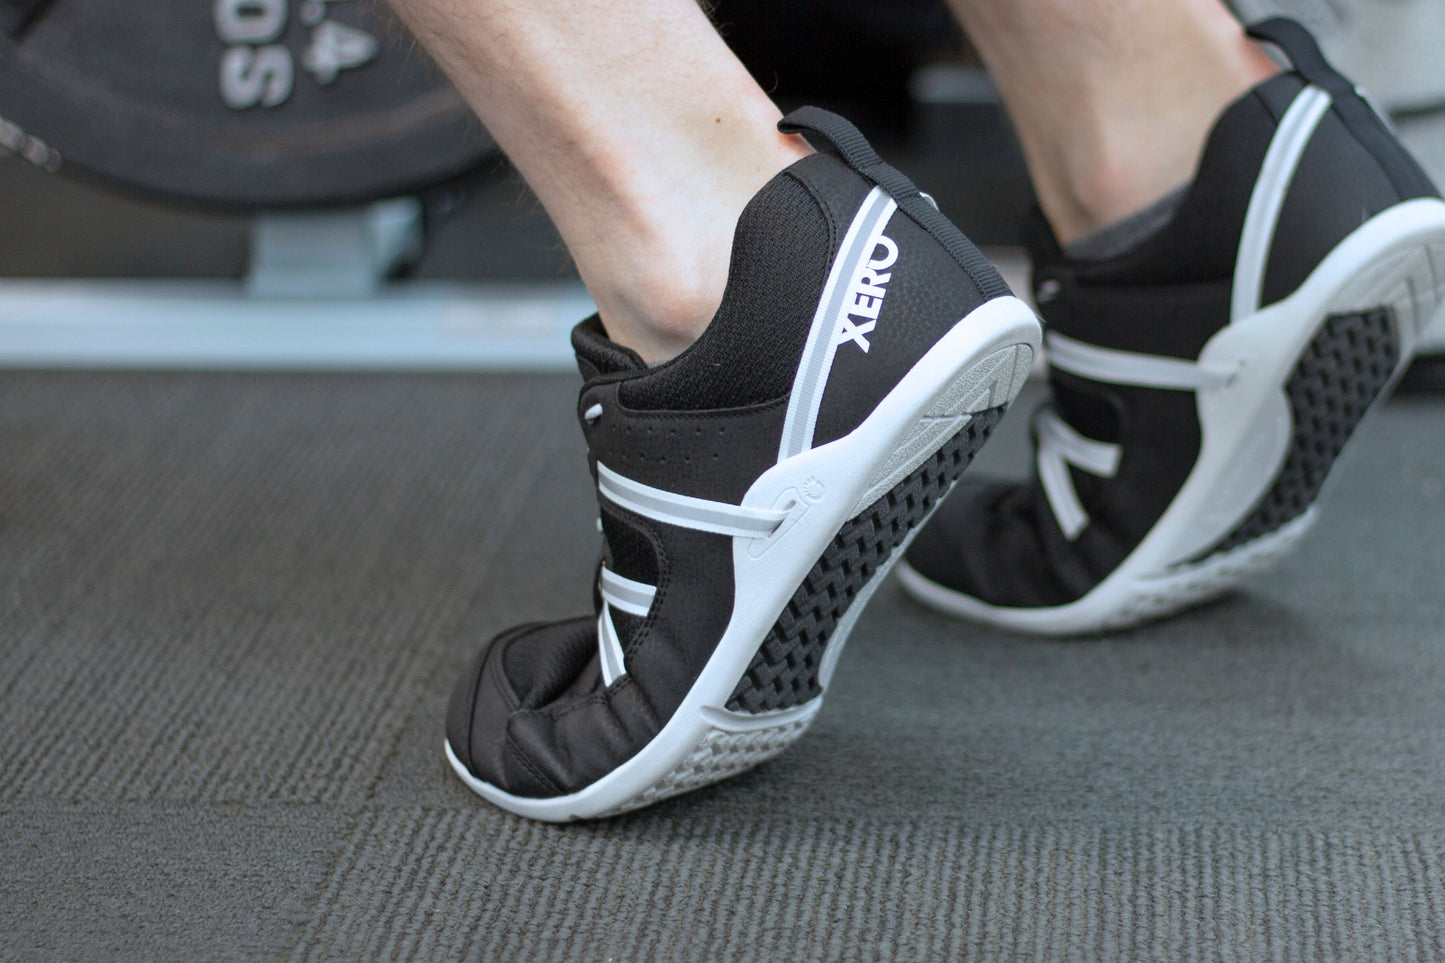 Xero Shoes Prio Womens barfods træningssko til kvinder i farven black/white, lifestyle